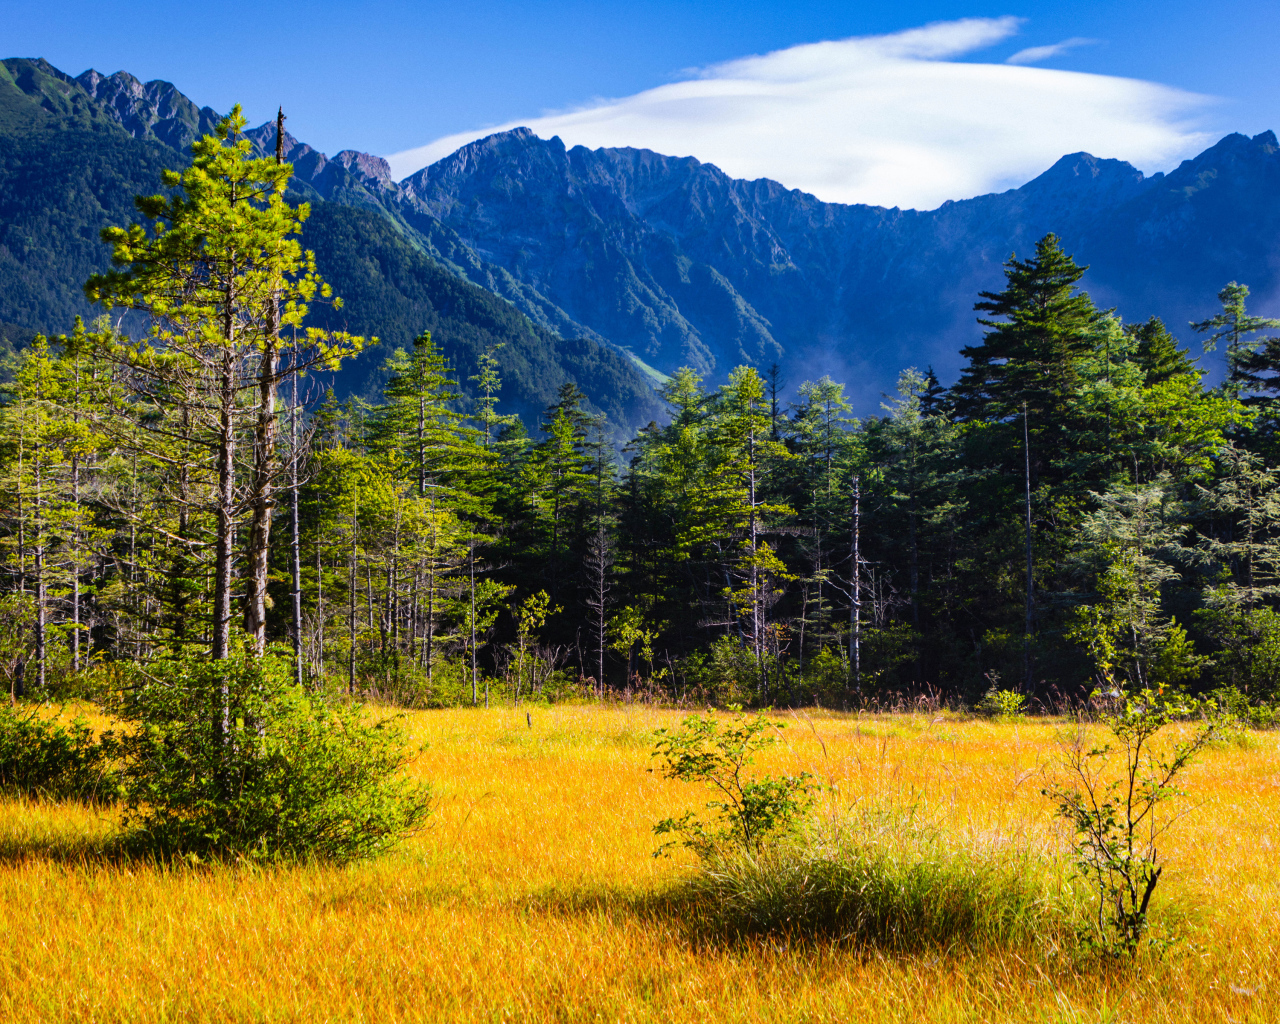 Вид на горы и лес под голубым небом, Япония